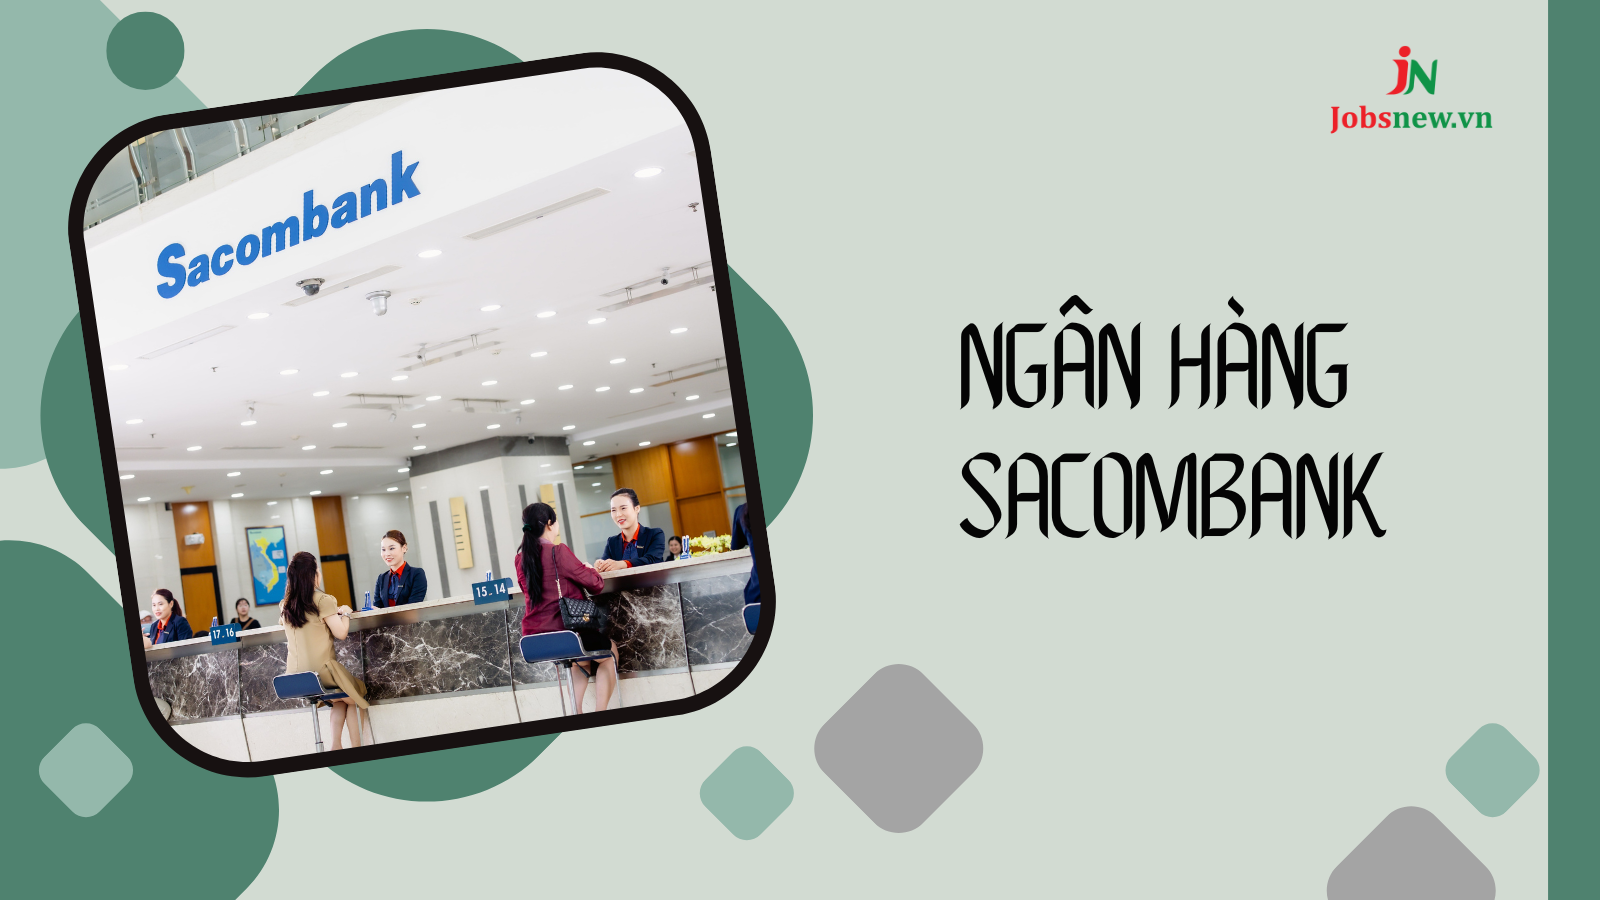 sacombank là ngân hàng gì, thứ 7 ngân hàng sacombank có làm việc không, sacombank là ngân hàng gì viết tắt, ngân hàng sacombank tên đầy đủ là gì, ngân hàng sacombank ký hiệu là gì